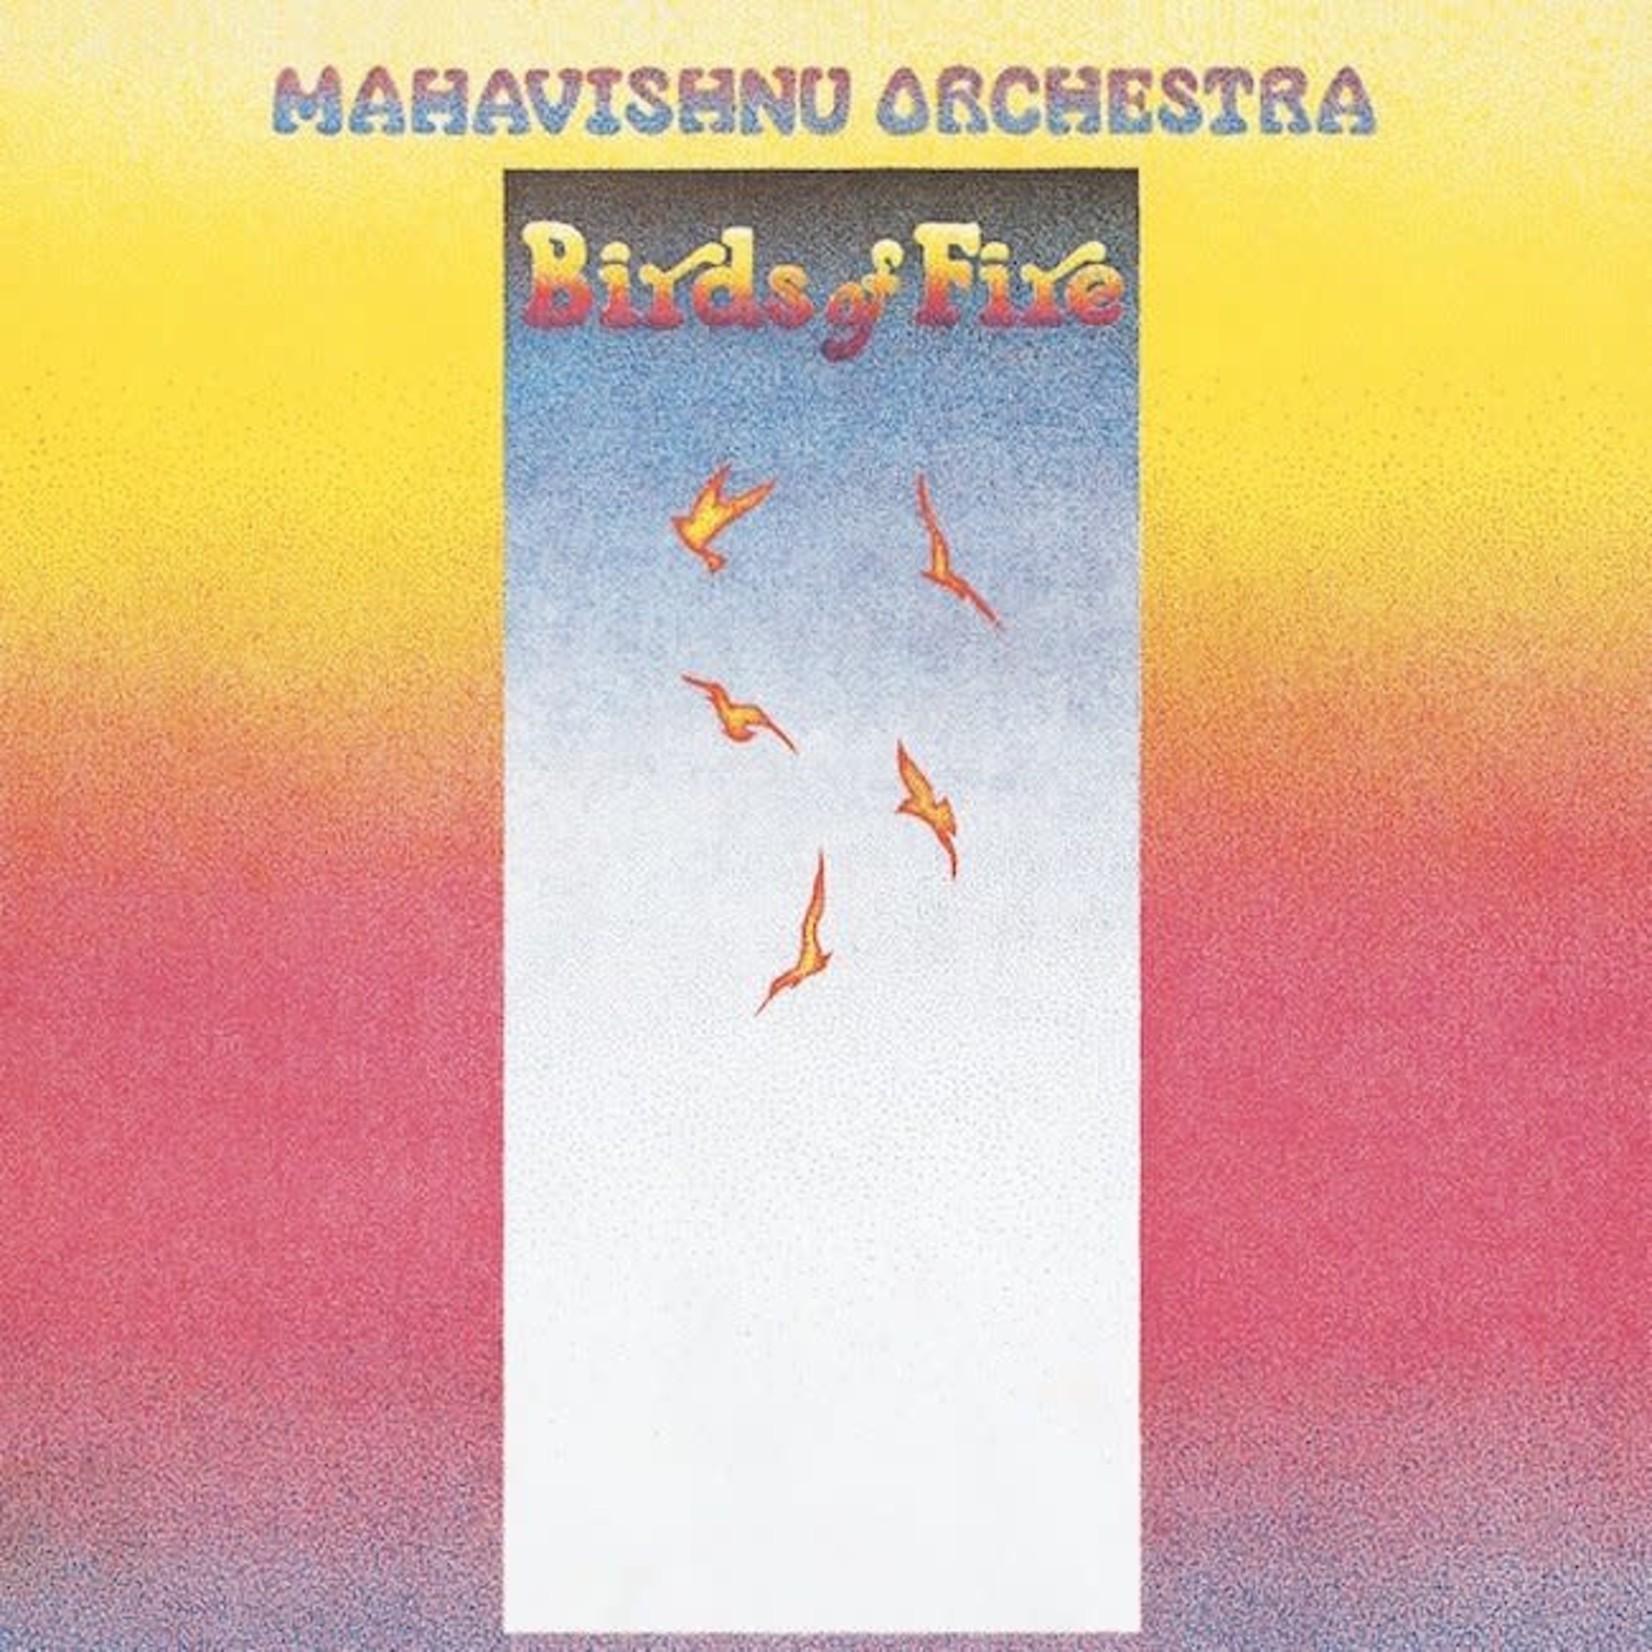 [Vintage] Mahavishnu Orchestra (John McLaughlin) - Birds of Fire